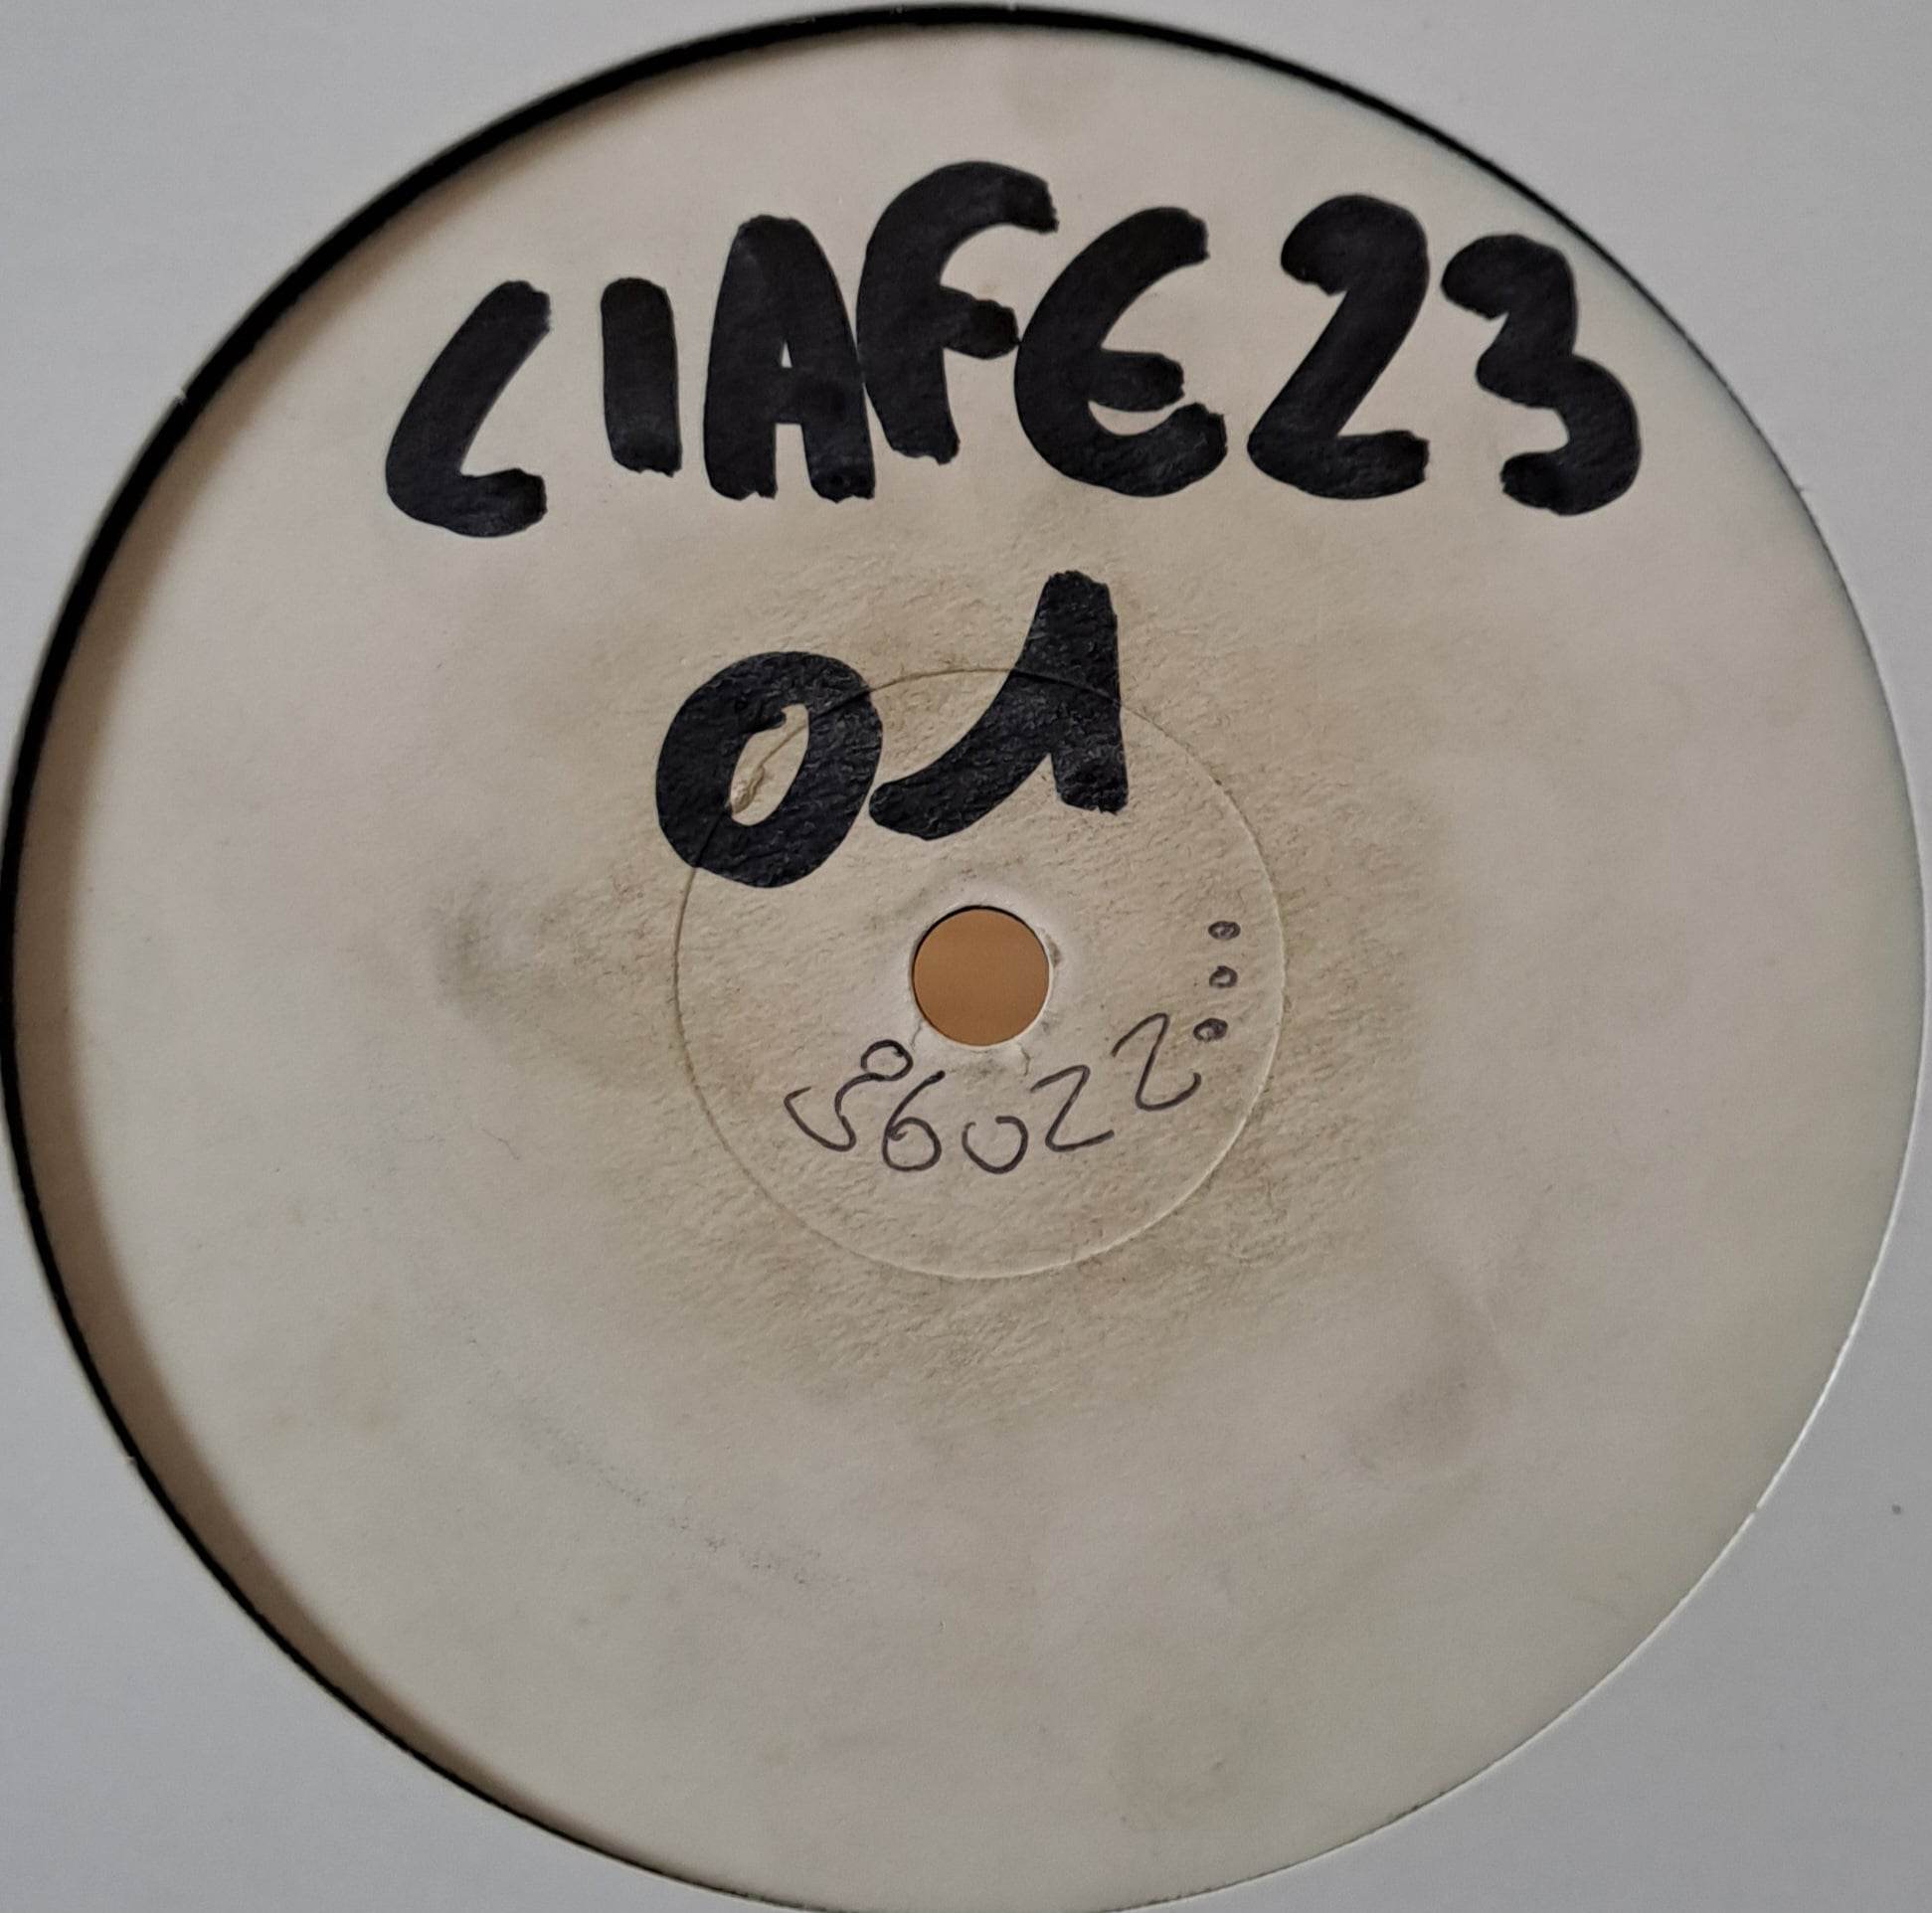 Liafe 23 01 White Label - vinyle freetekno